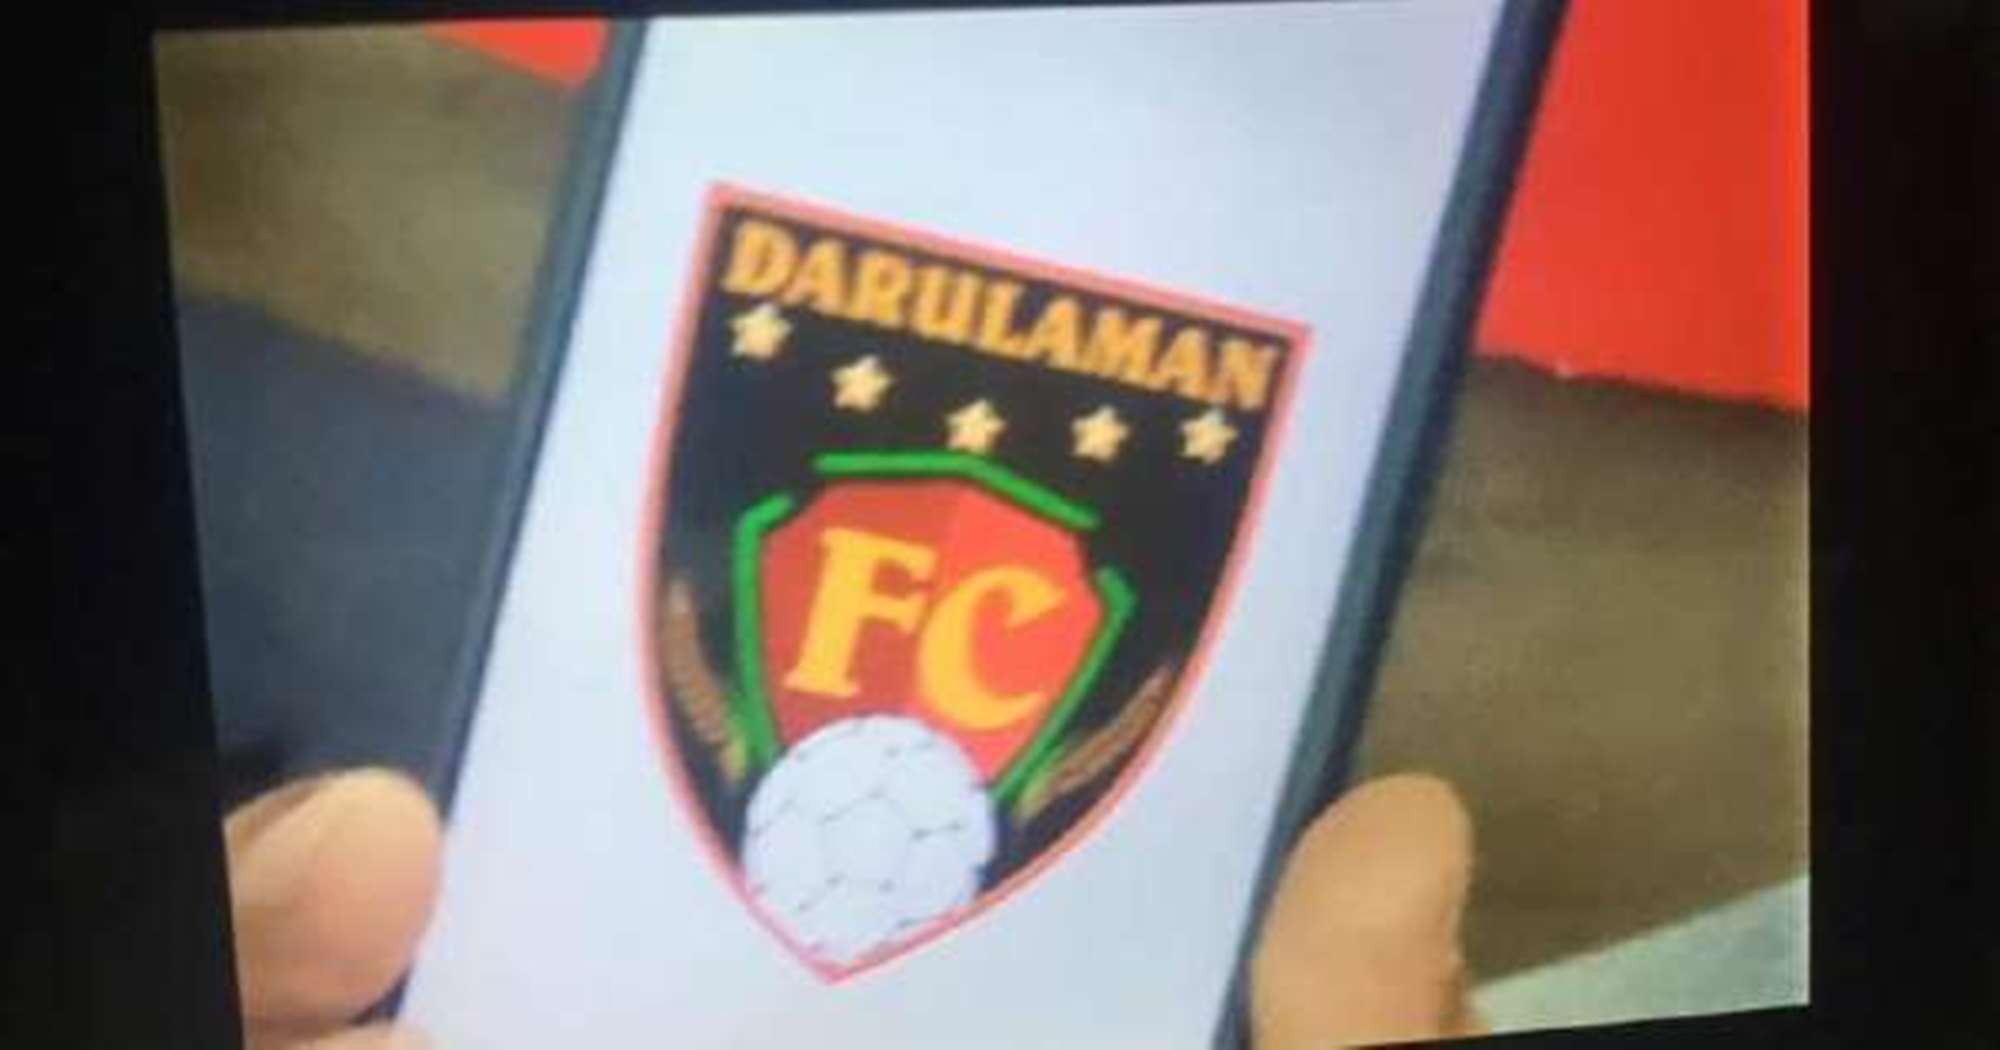 Kedah Darulaman FC Cipta Logo